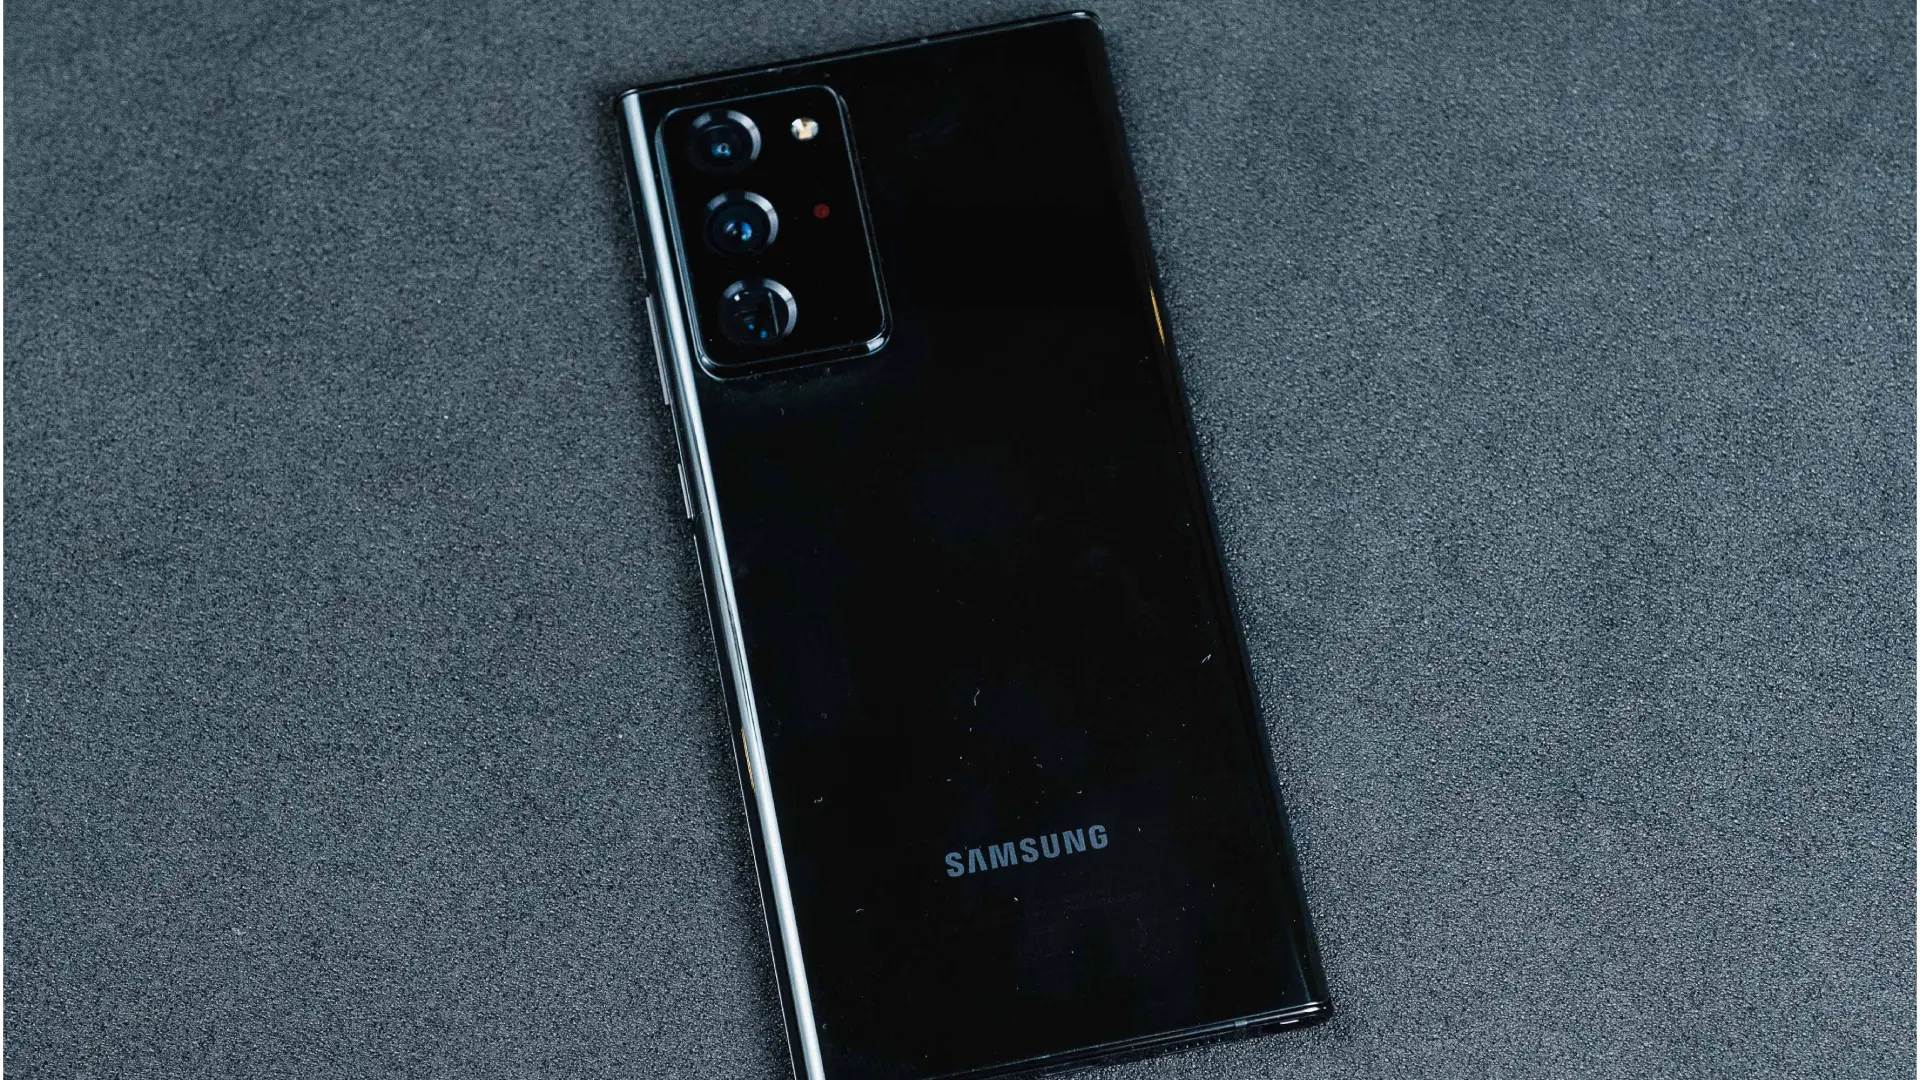 Samsung Galaxy Star Preto 3D model - Baixar Electrónica no